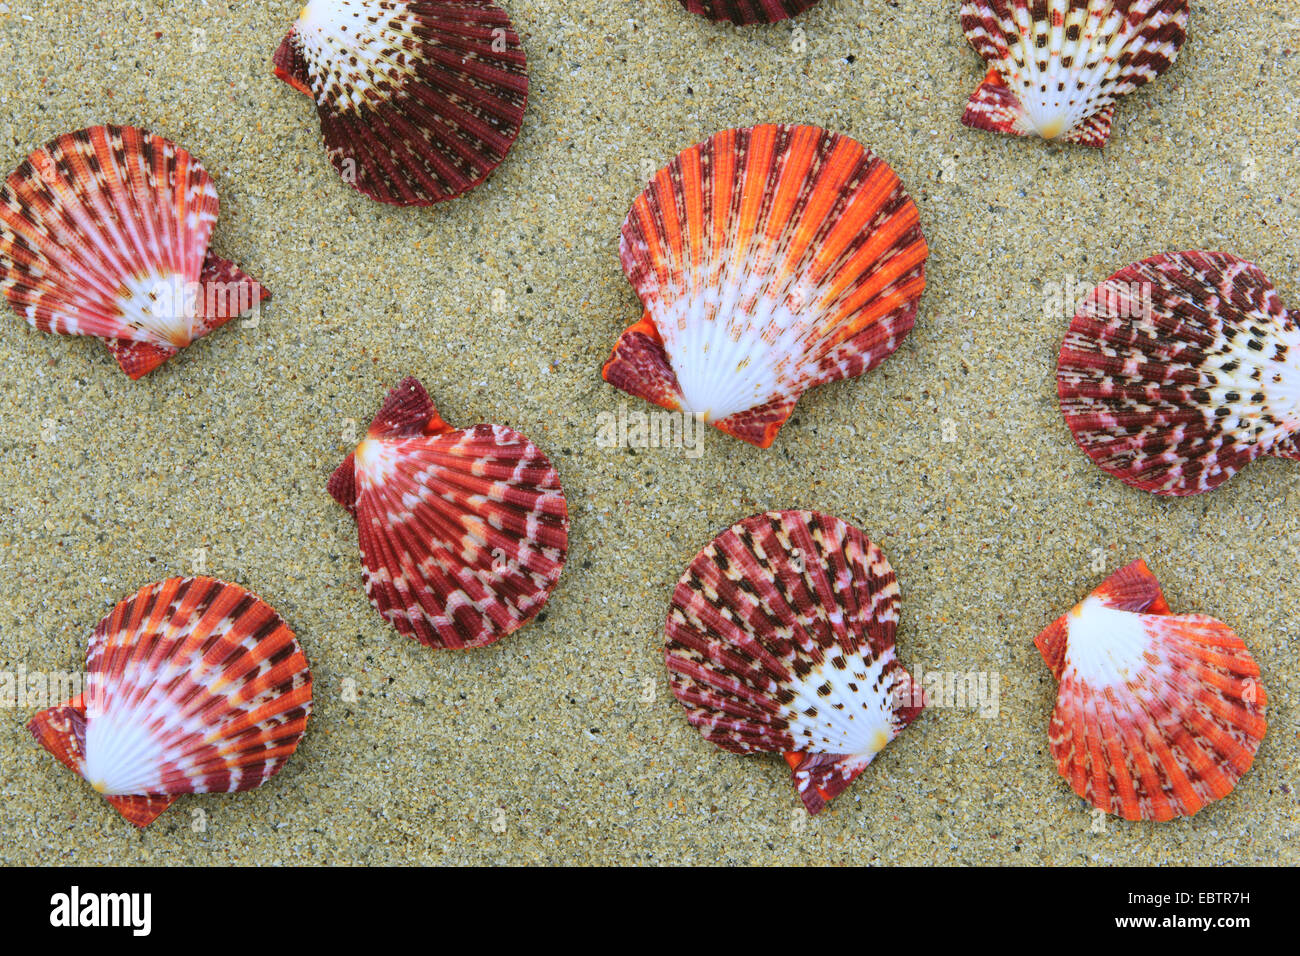 Kegelschnecke (Pecten Pallium), Muscheln im Sand, Großbritannien, Schottland Stockfoto